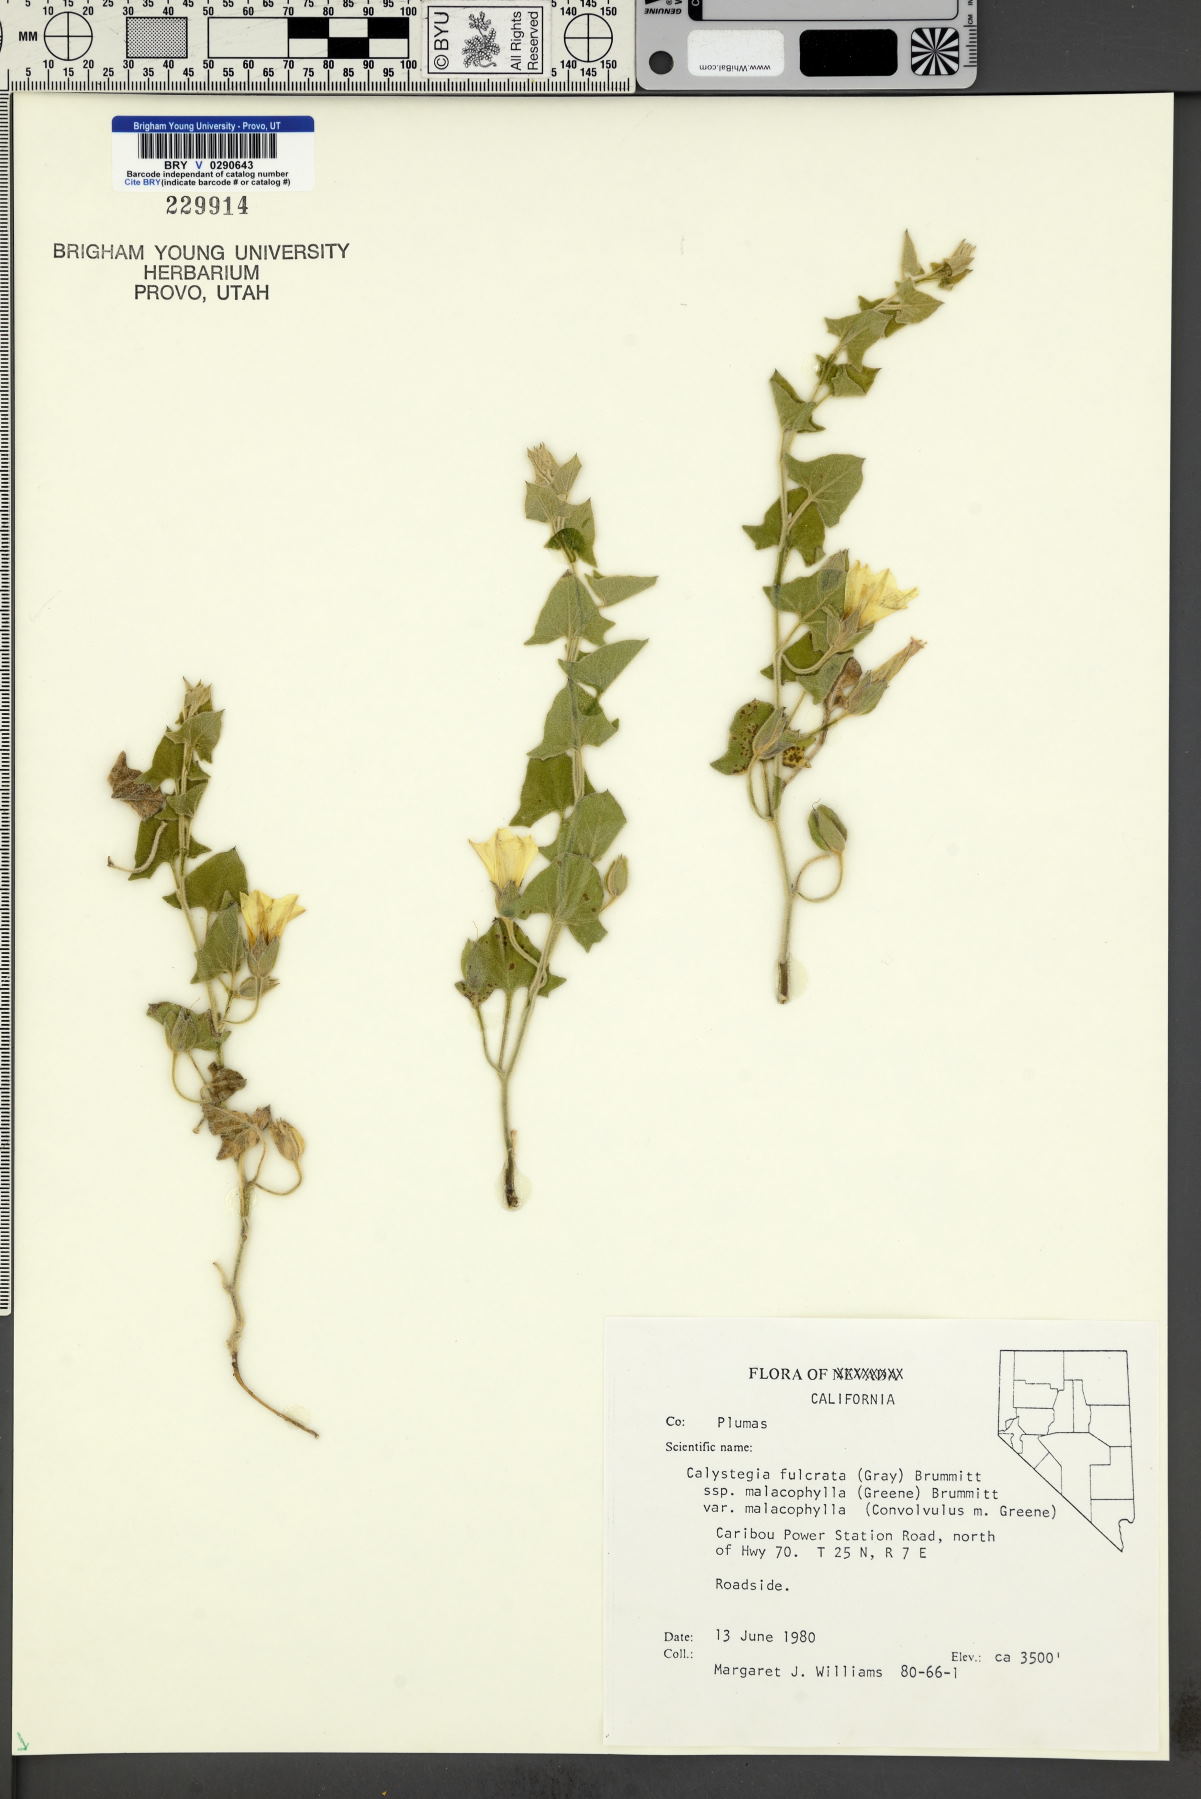 Calystegia fulcrata subsp. malacophylla image